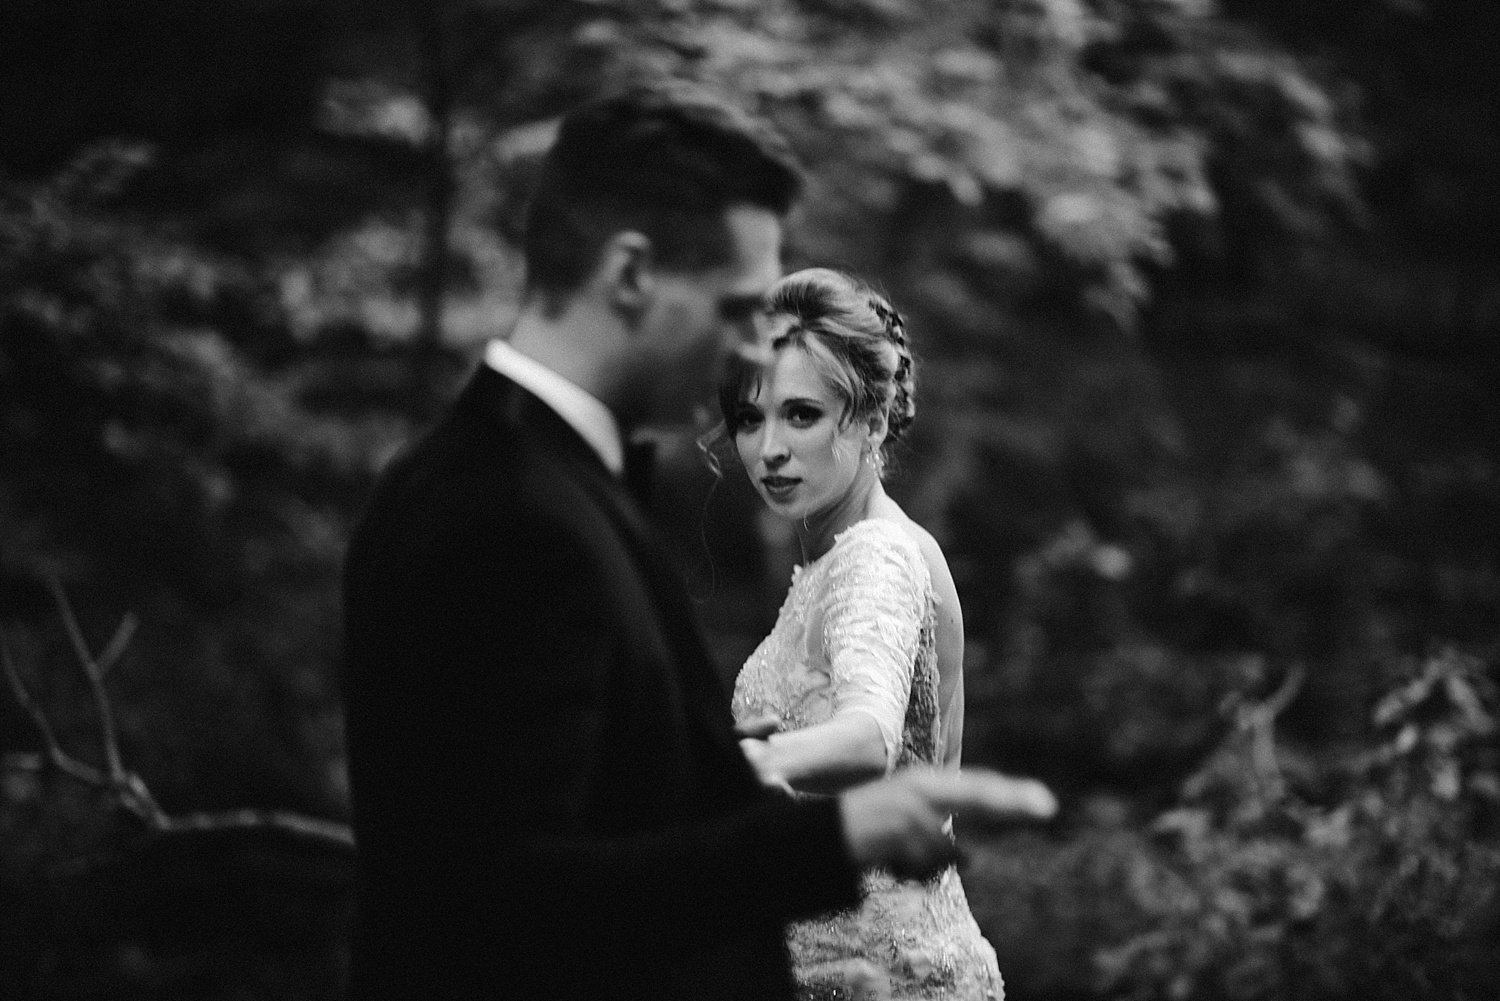 Acadia-Wedding-Photography-66.jpg